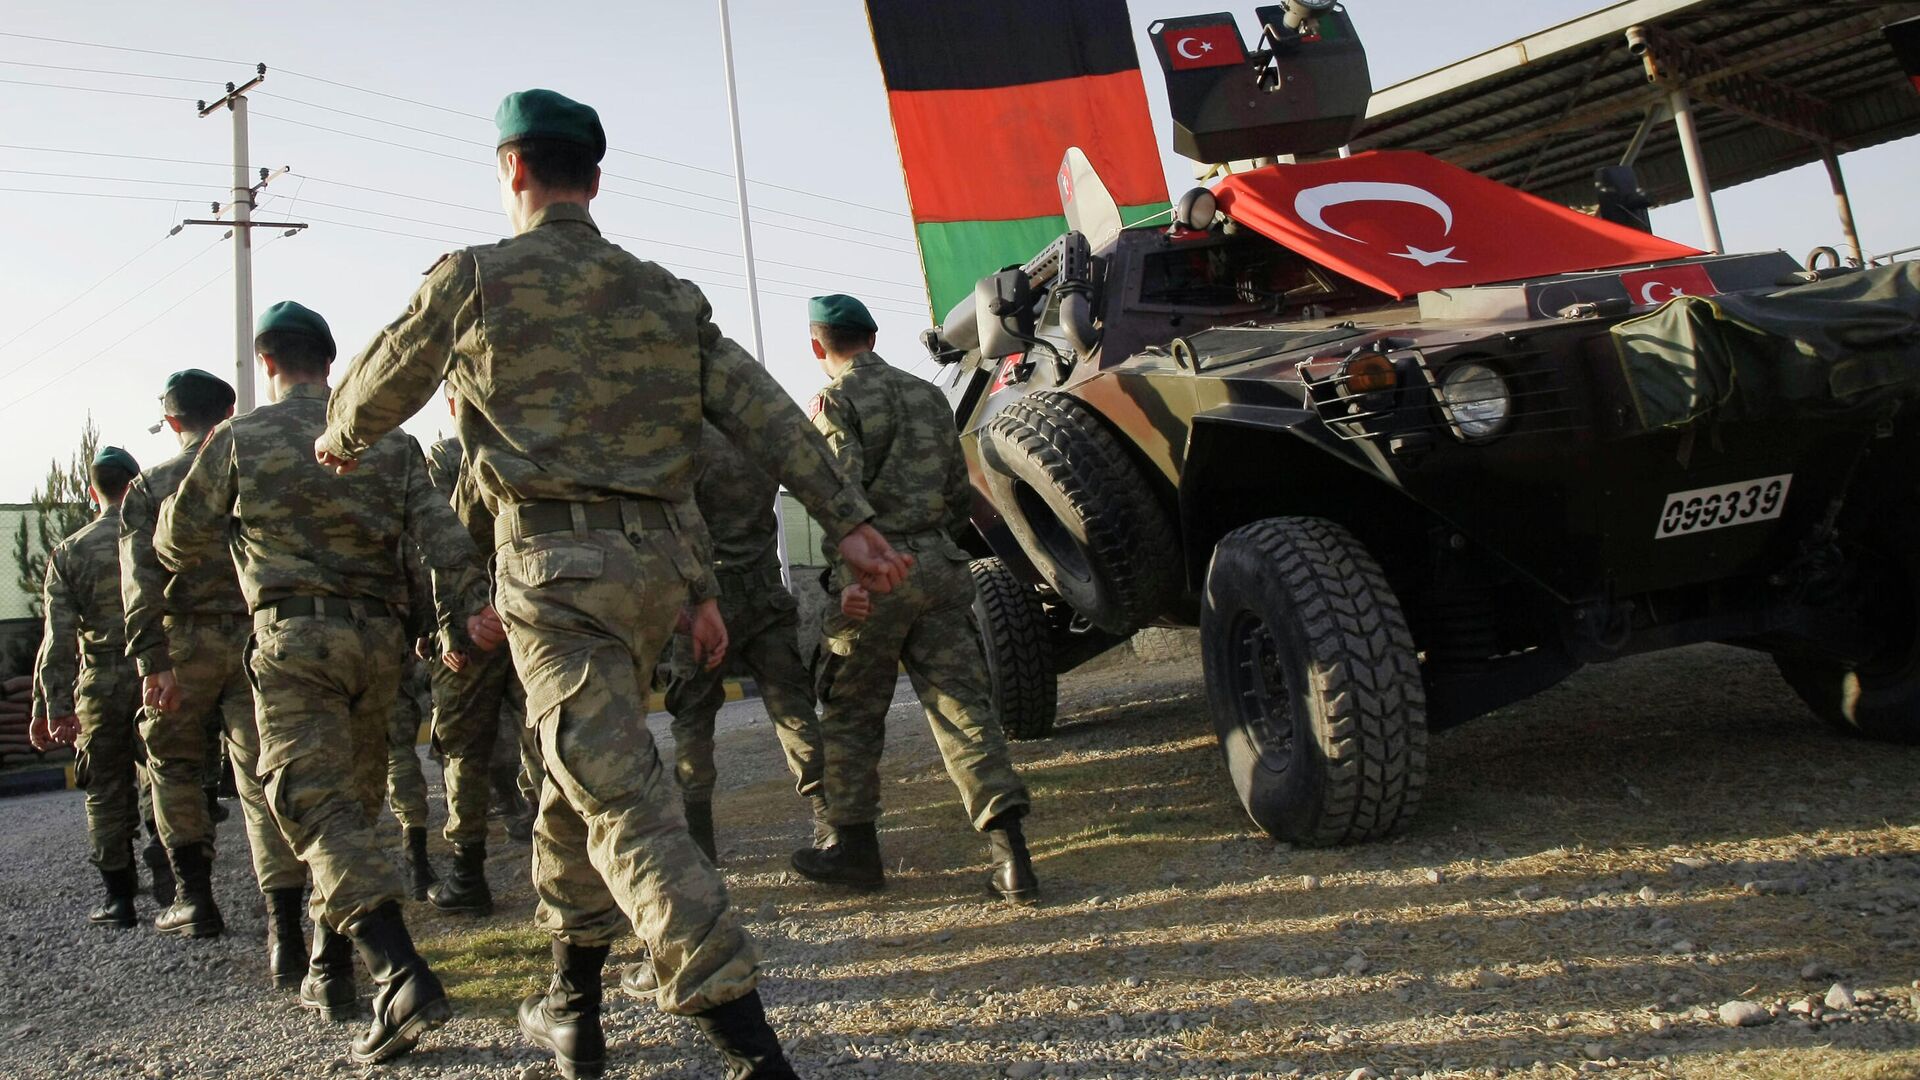 Soldados turcos en el campamento de la OTAN  Dogan en Kabul, Afganistán, octubre de 2012. - Sputnik Mundo, 1920, 17.08.2021